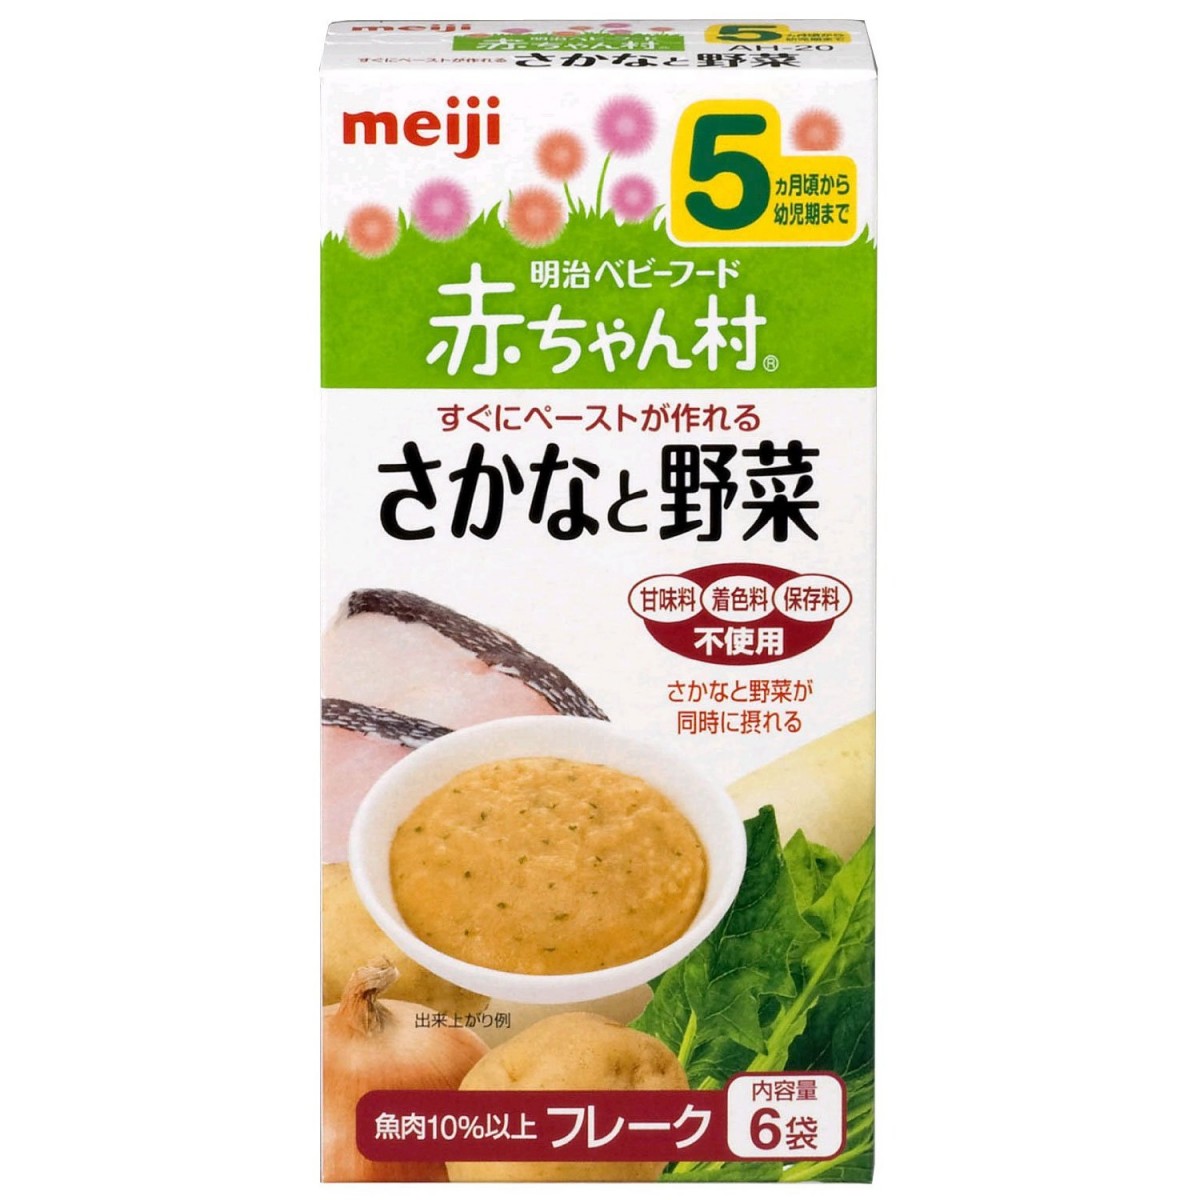 Top 4 thương hiệu bột ăn dặm của Nhật được ưa chuộng nhất hiện nay